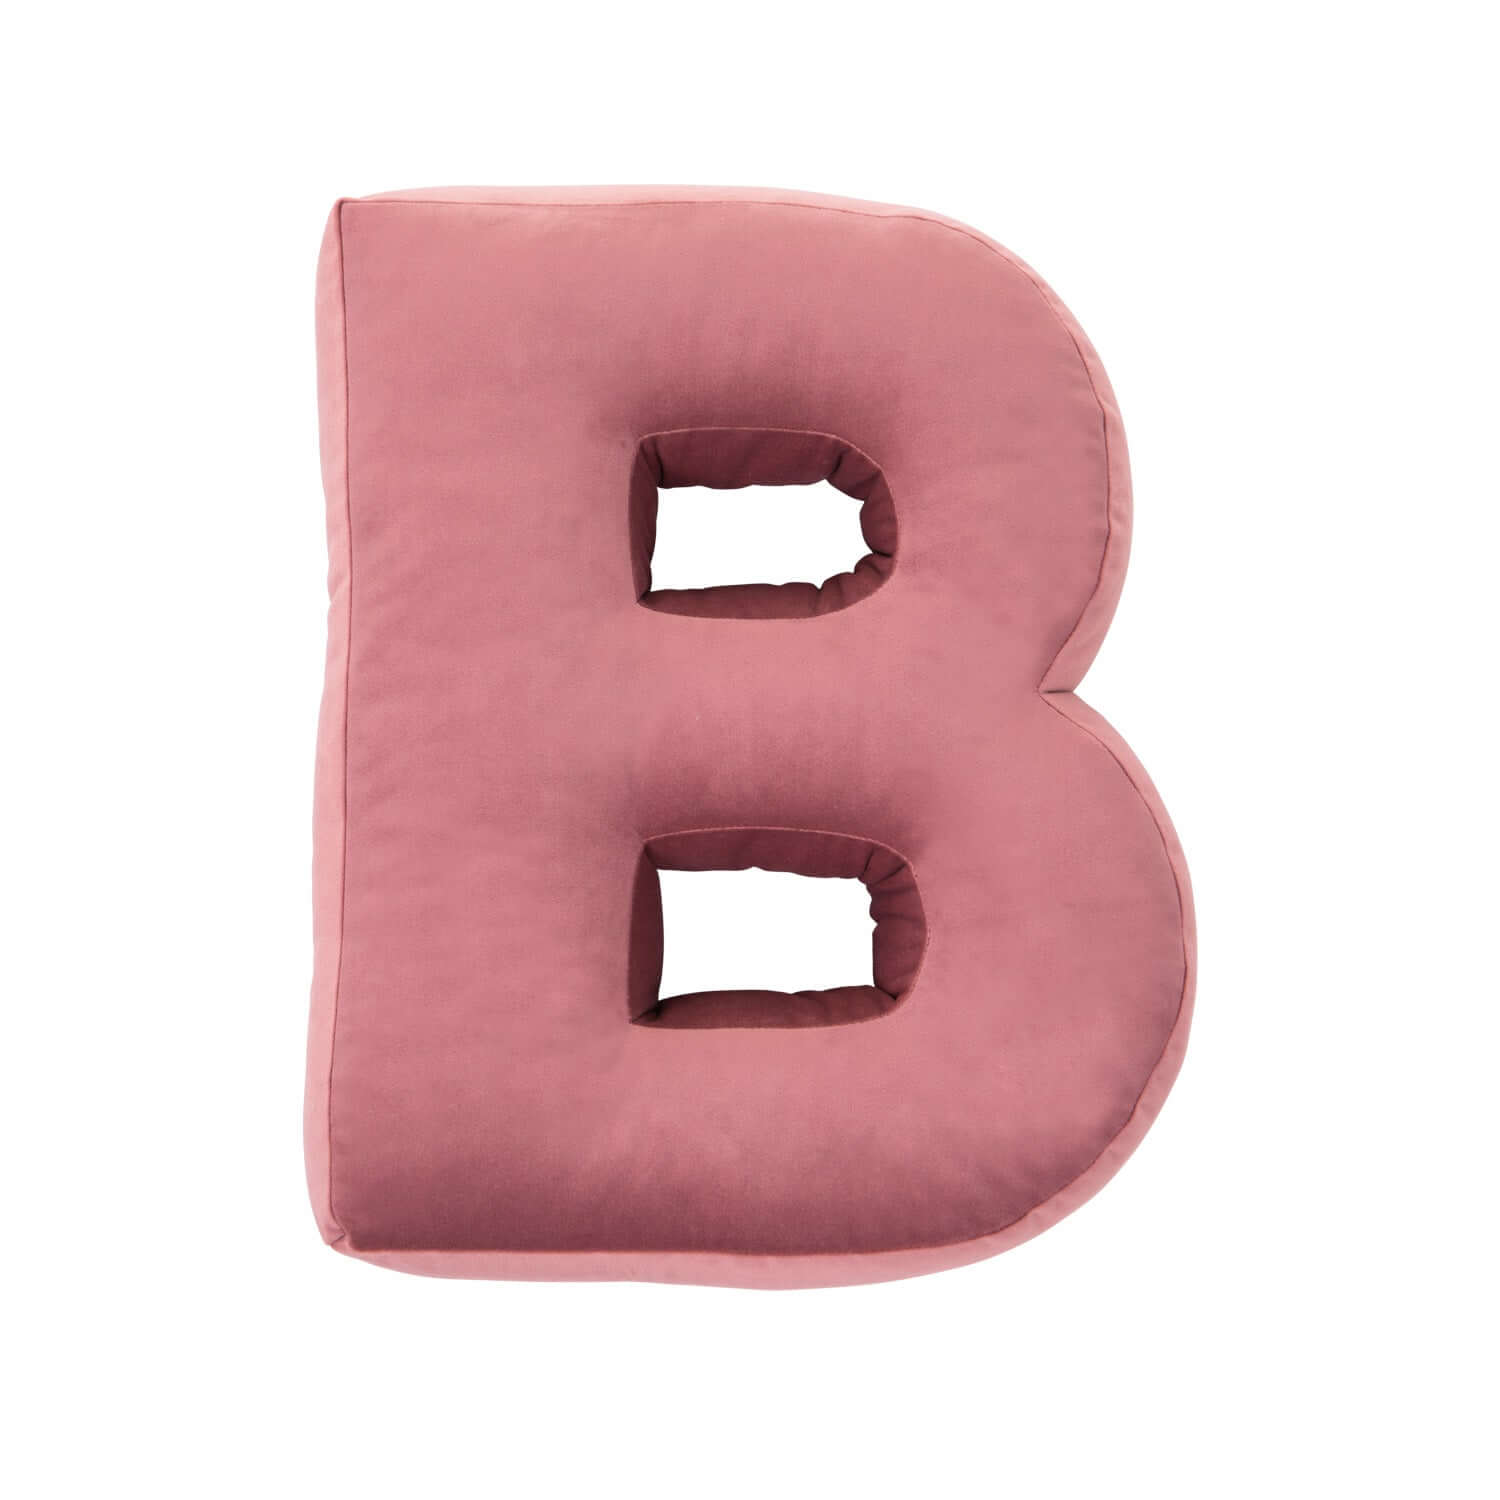 Poduszka literka welurowa B w kolorze różowym od bettys home przód